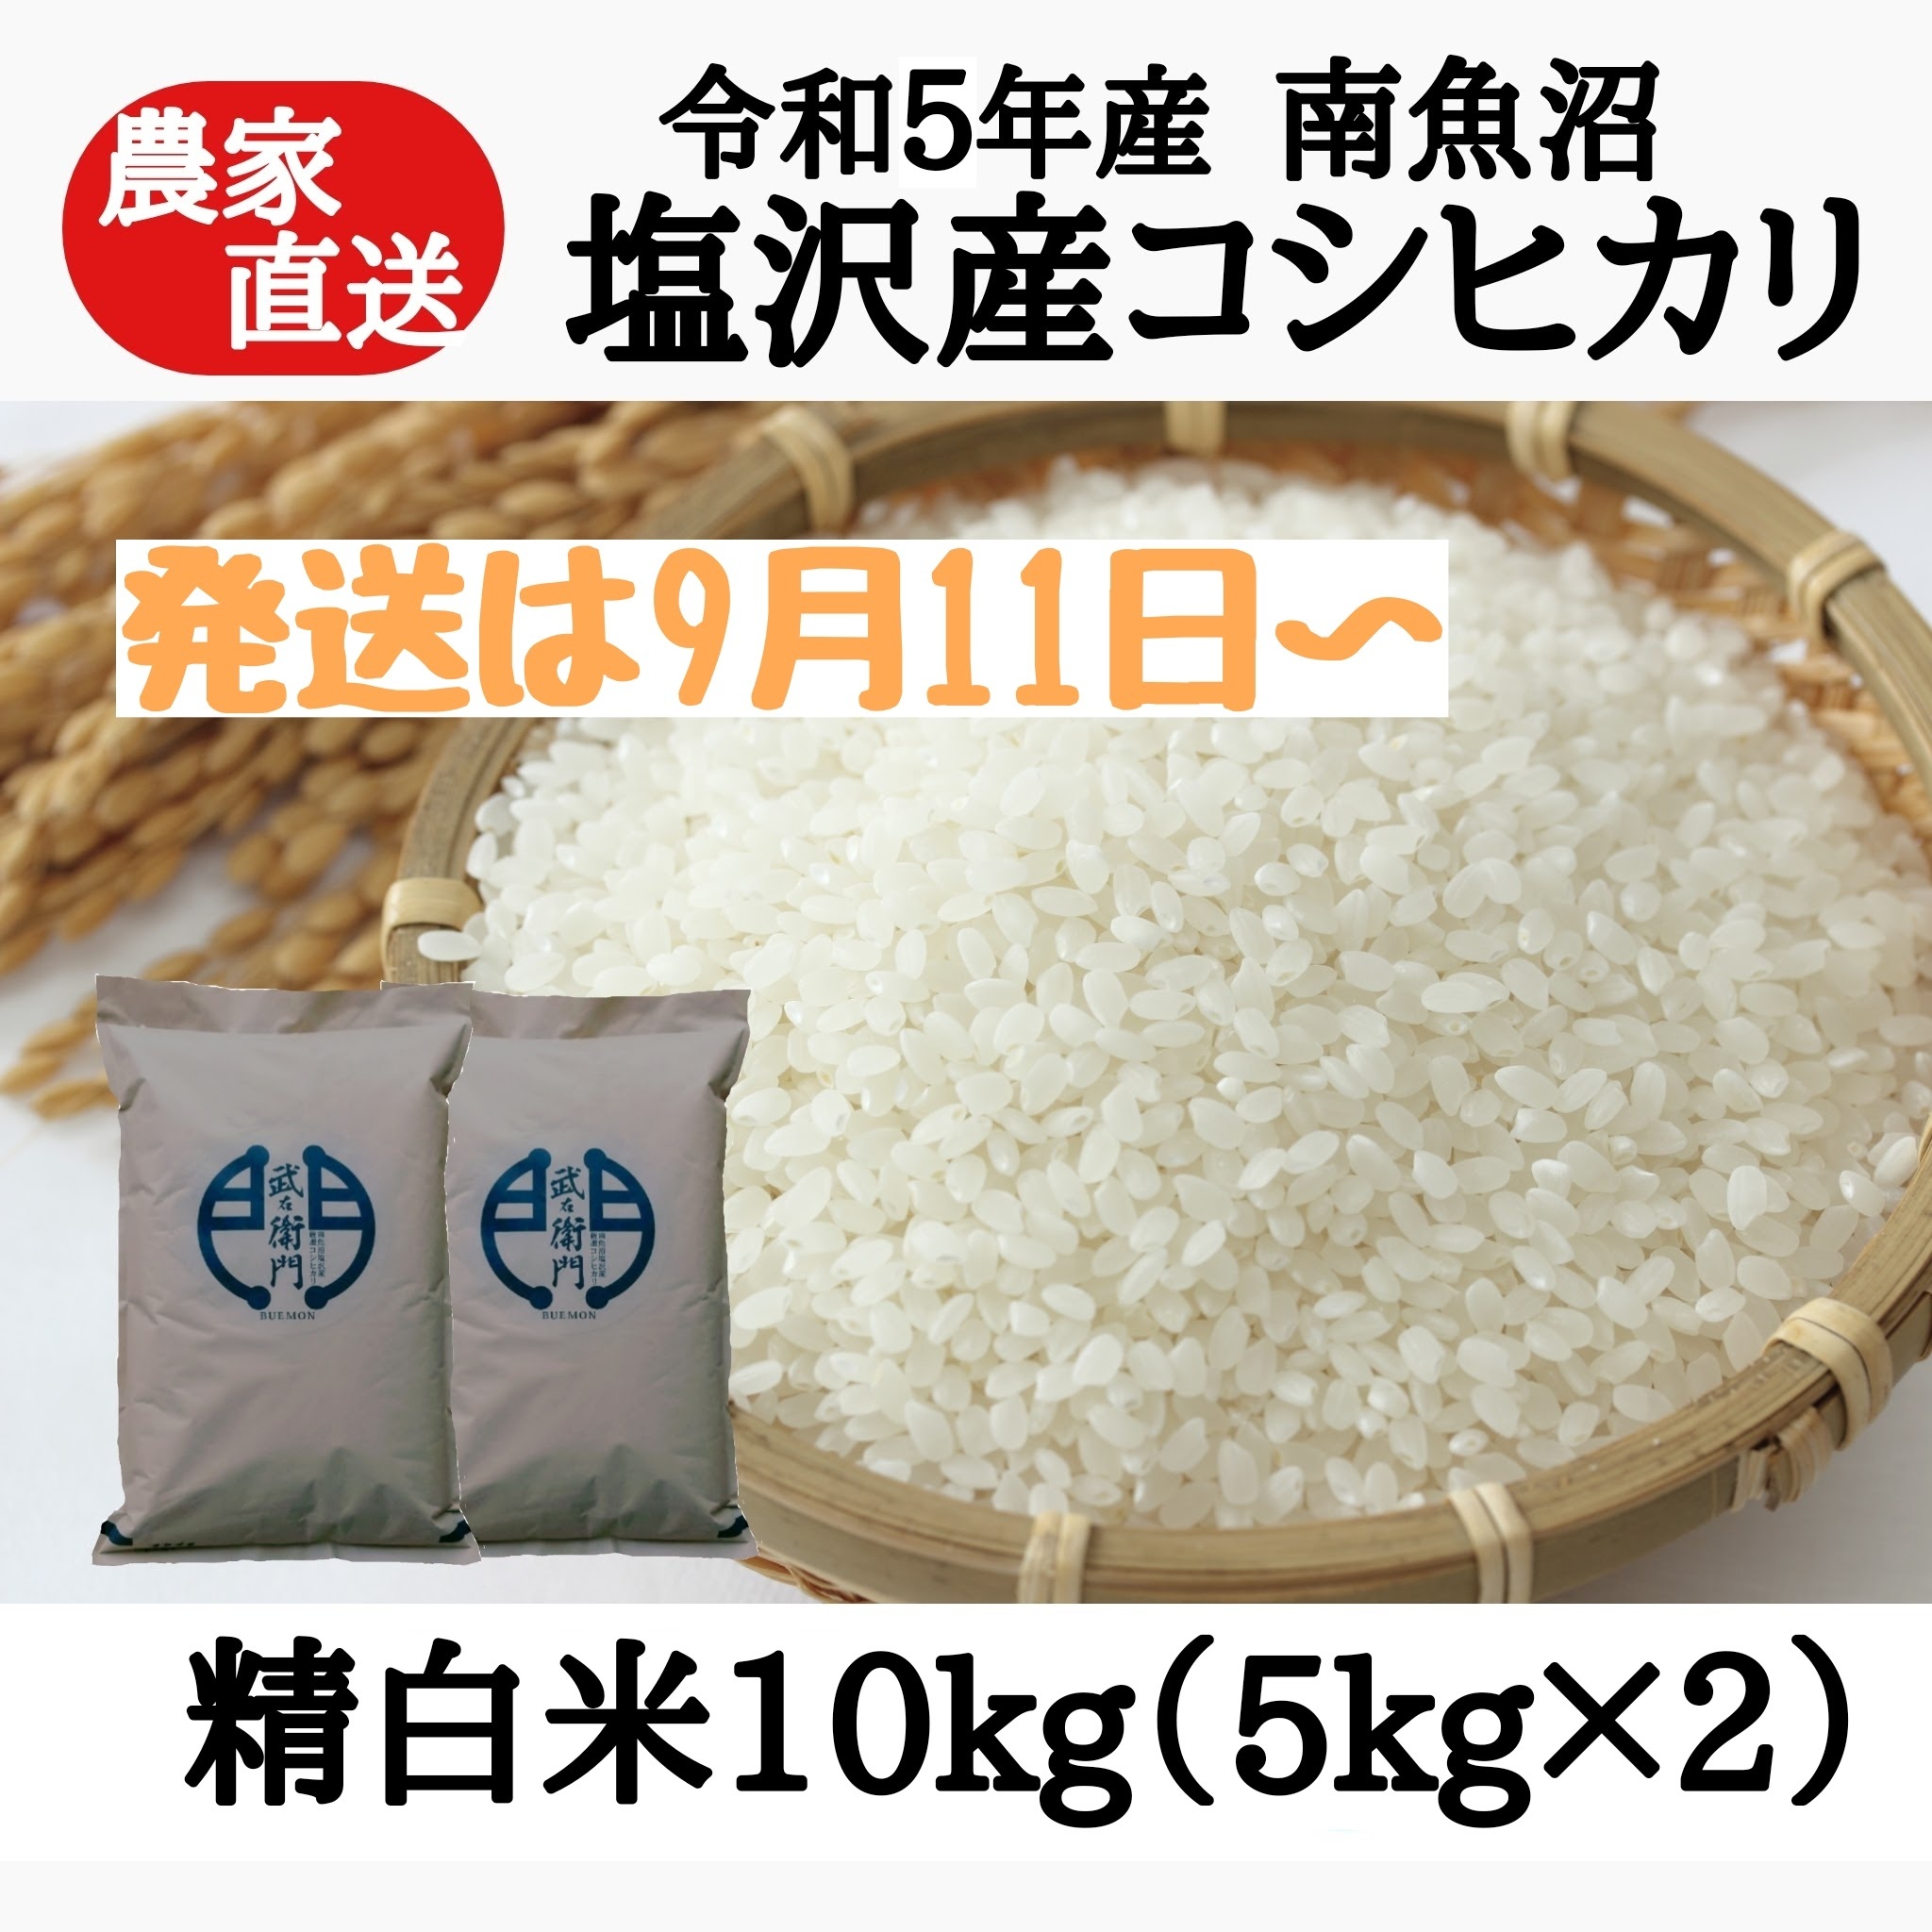 コシヒカリ(白米 10kg) (5kg×2袋)